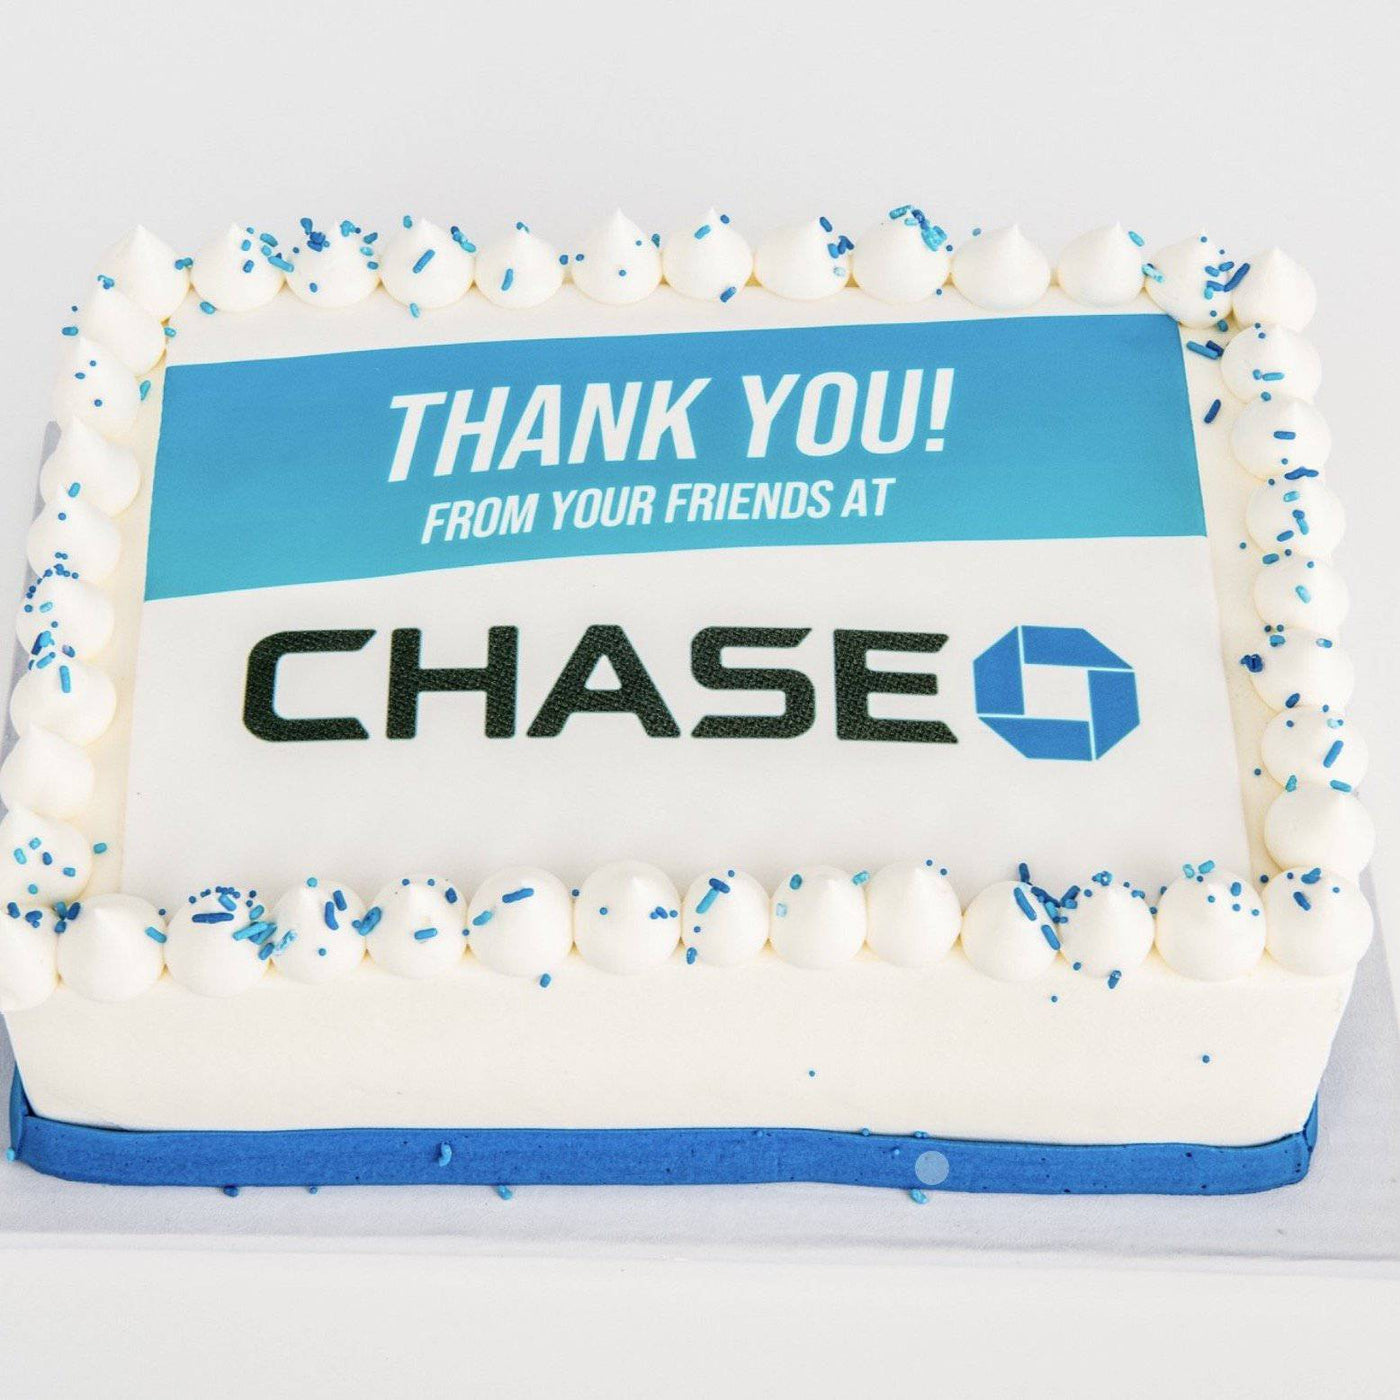 Chase Bank Cake